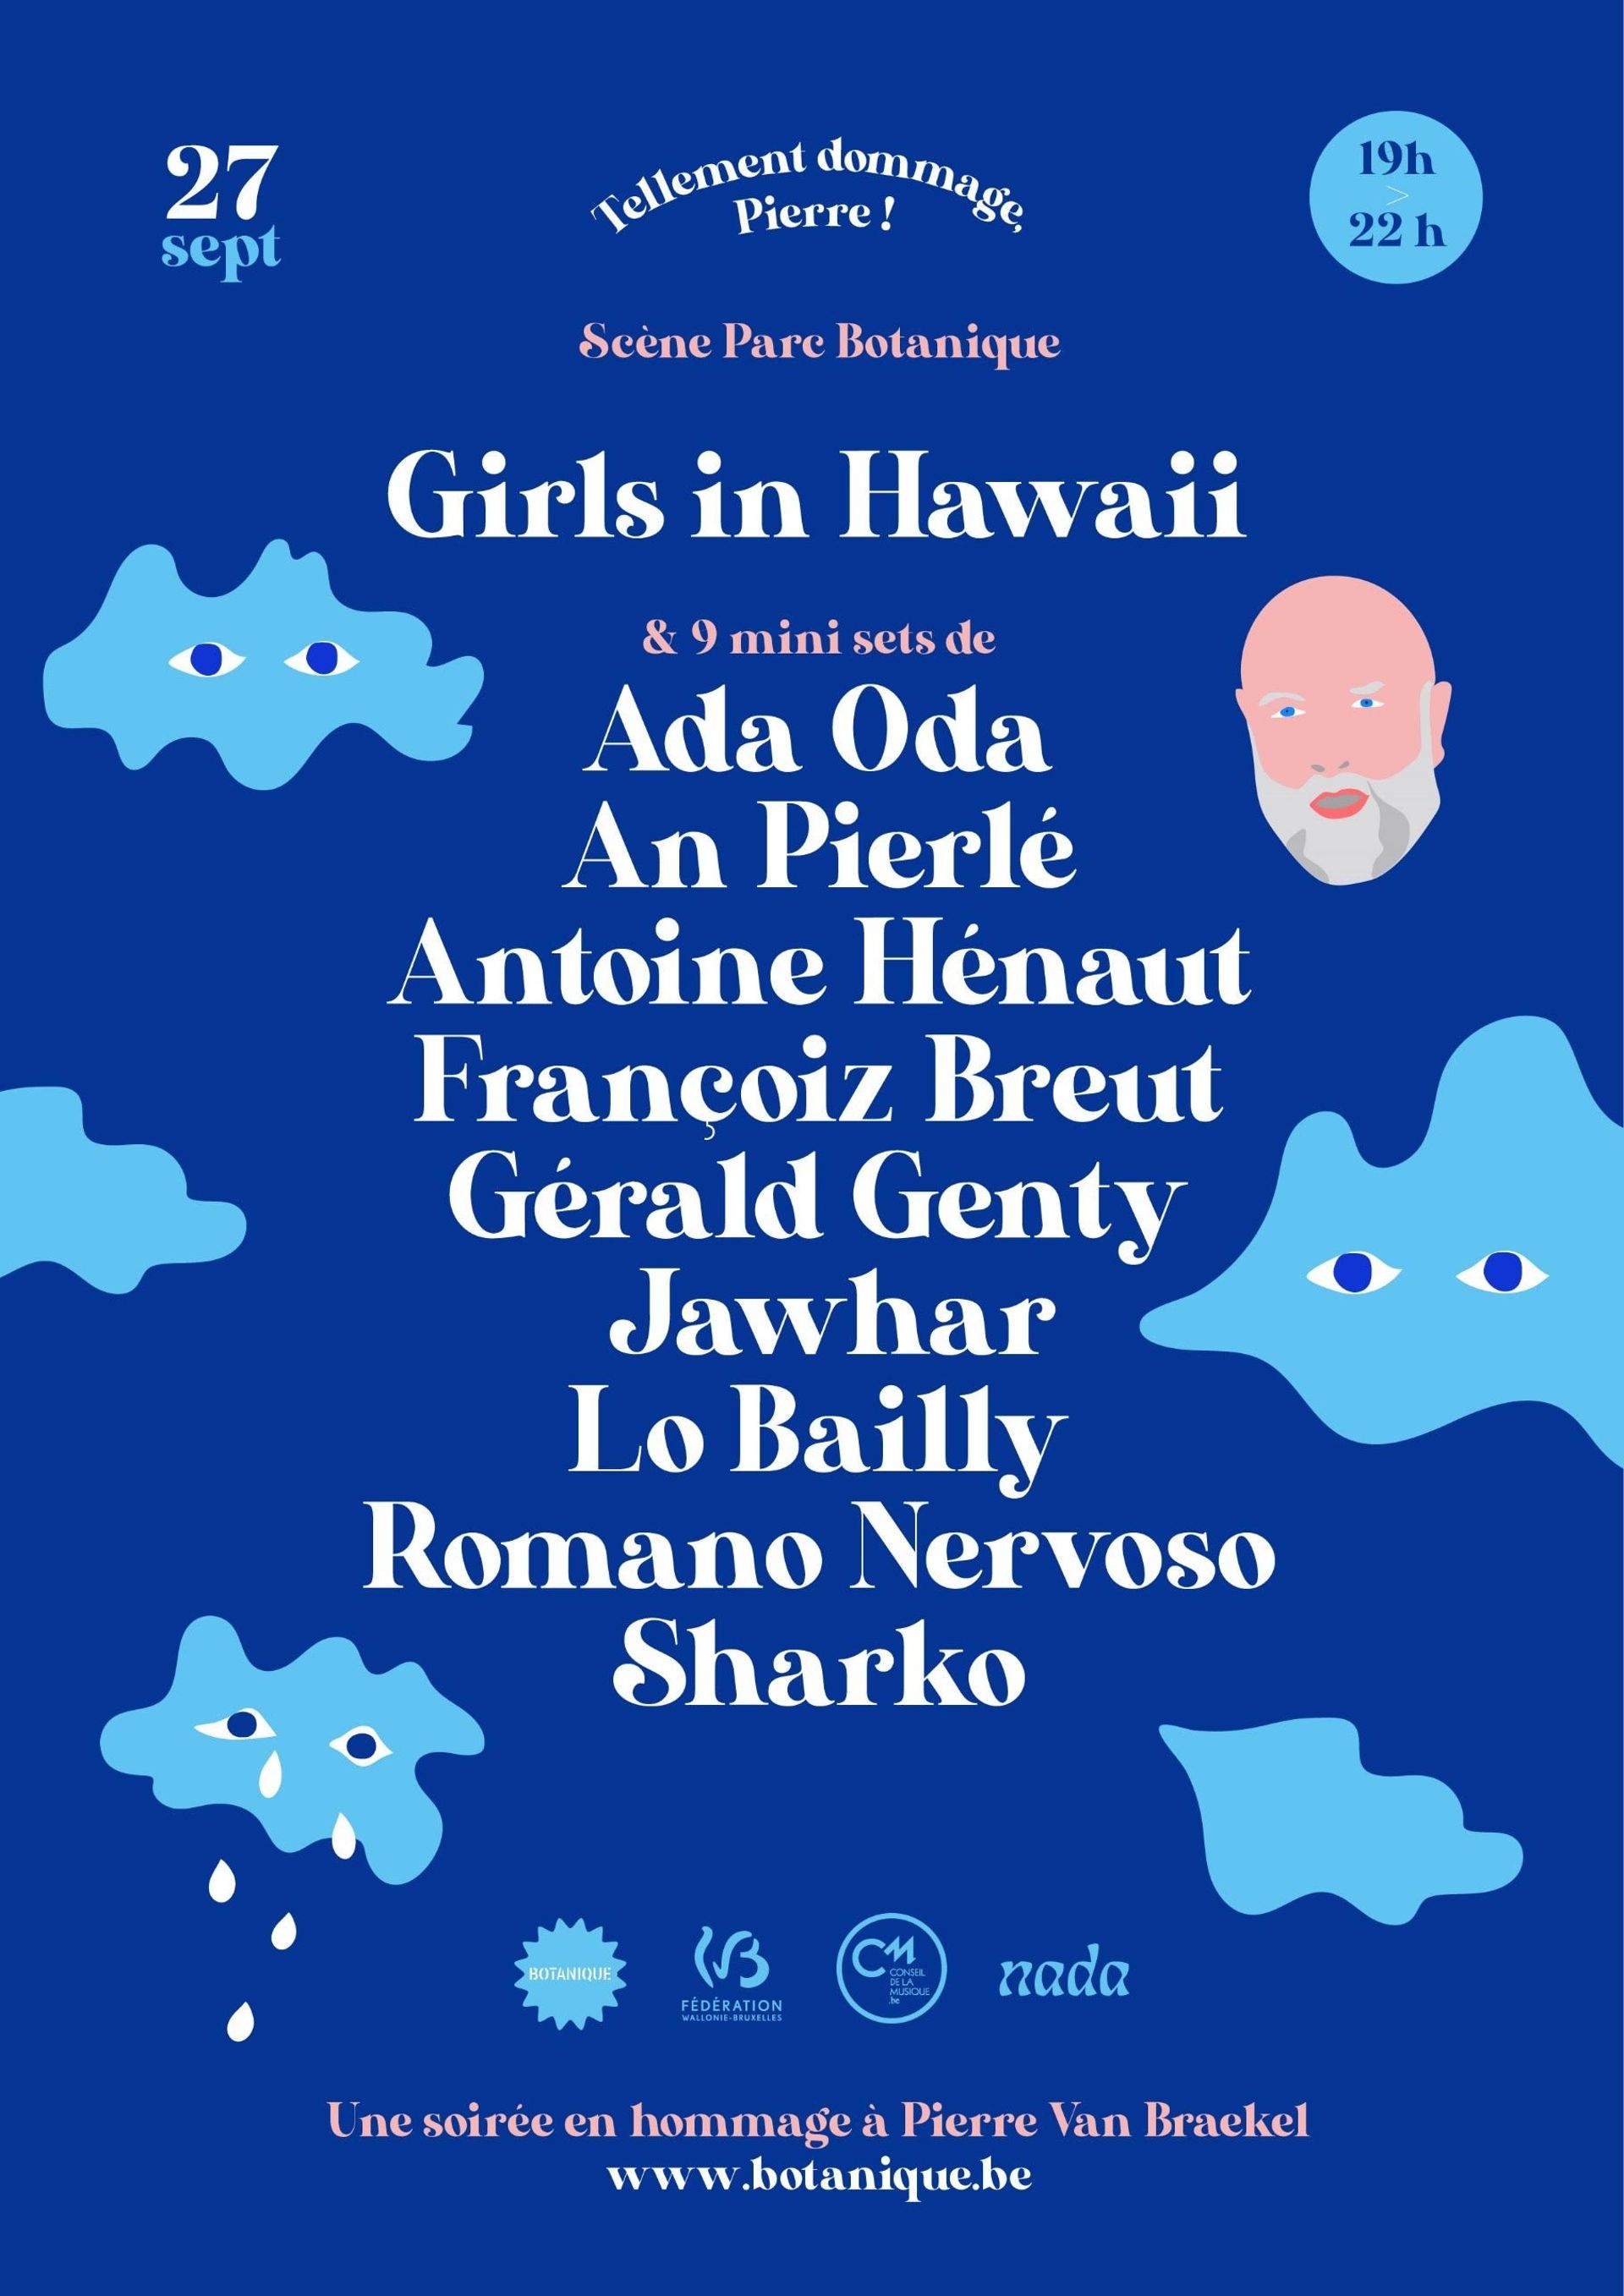 Outre les 45 minutes de concert de Girls In Hawaii, se produiront aussi An Pierlé, Antoine Hénaut, Jawhar, Romano Nervoso et Sharko, enchaînant eux de courtes performances d'un quart d'heure.